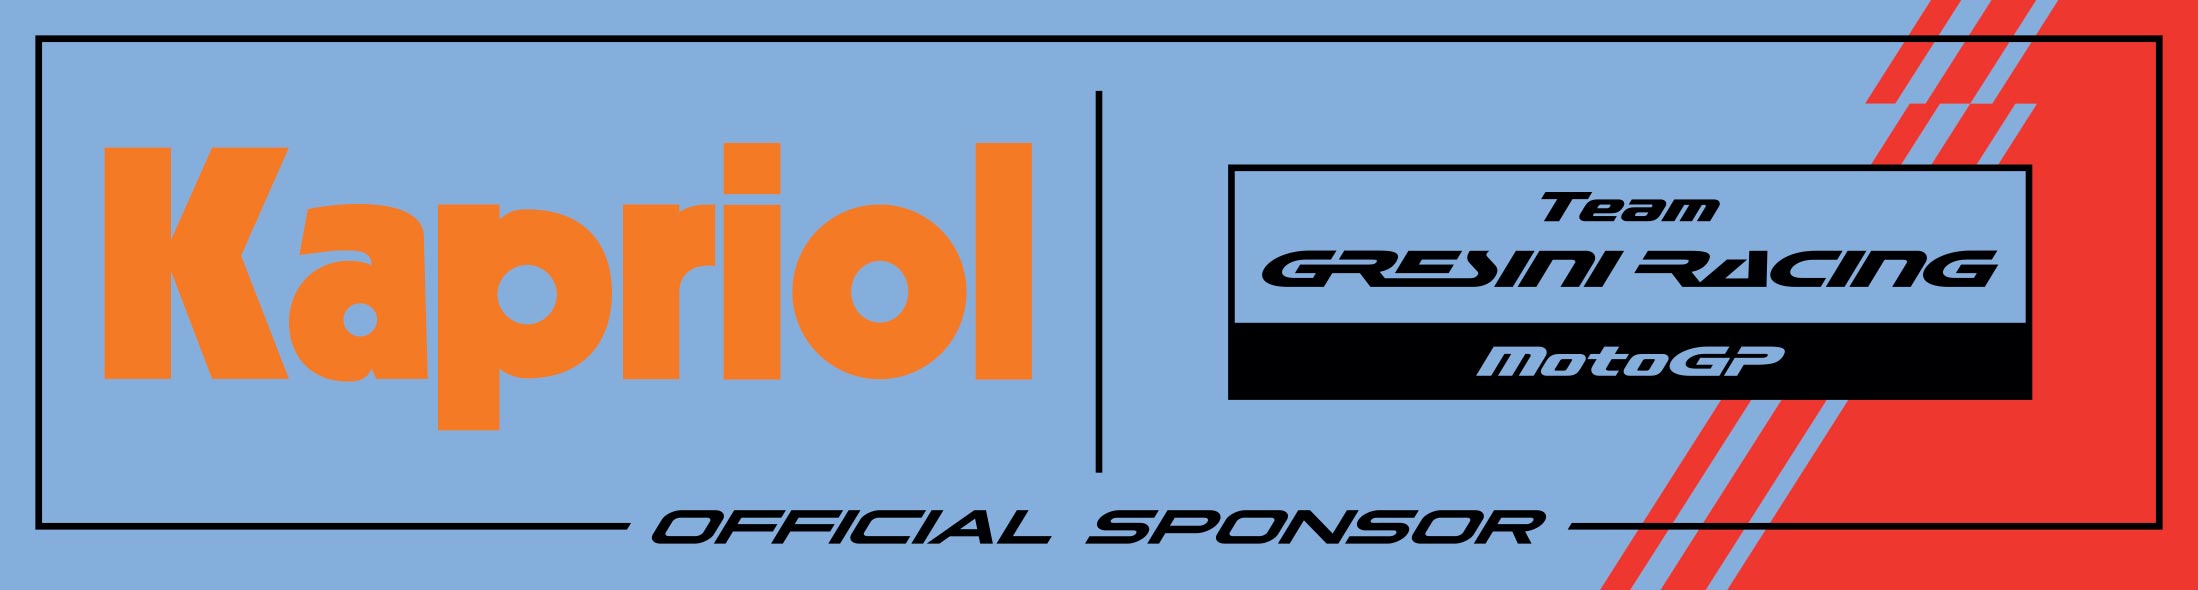 Gresini Racing Moto GP Official Sponsor